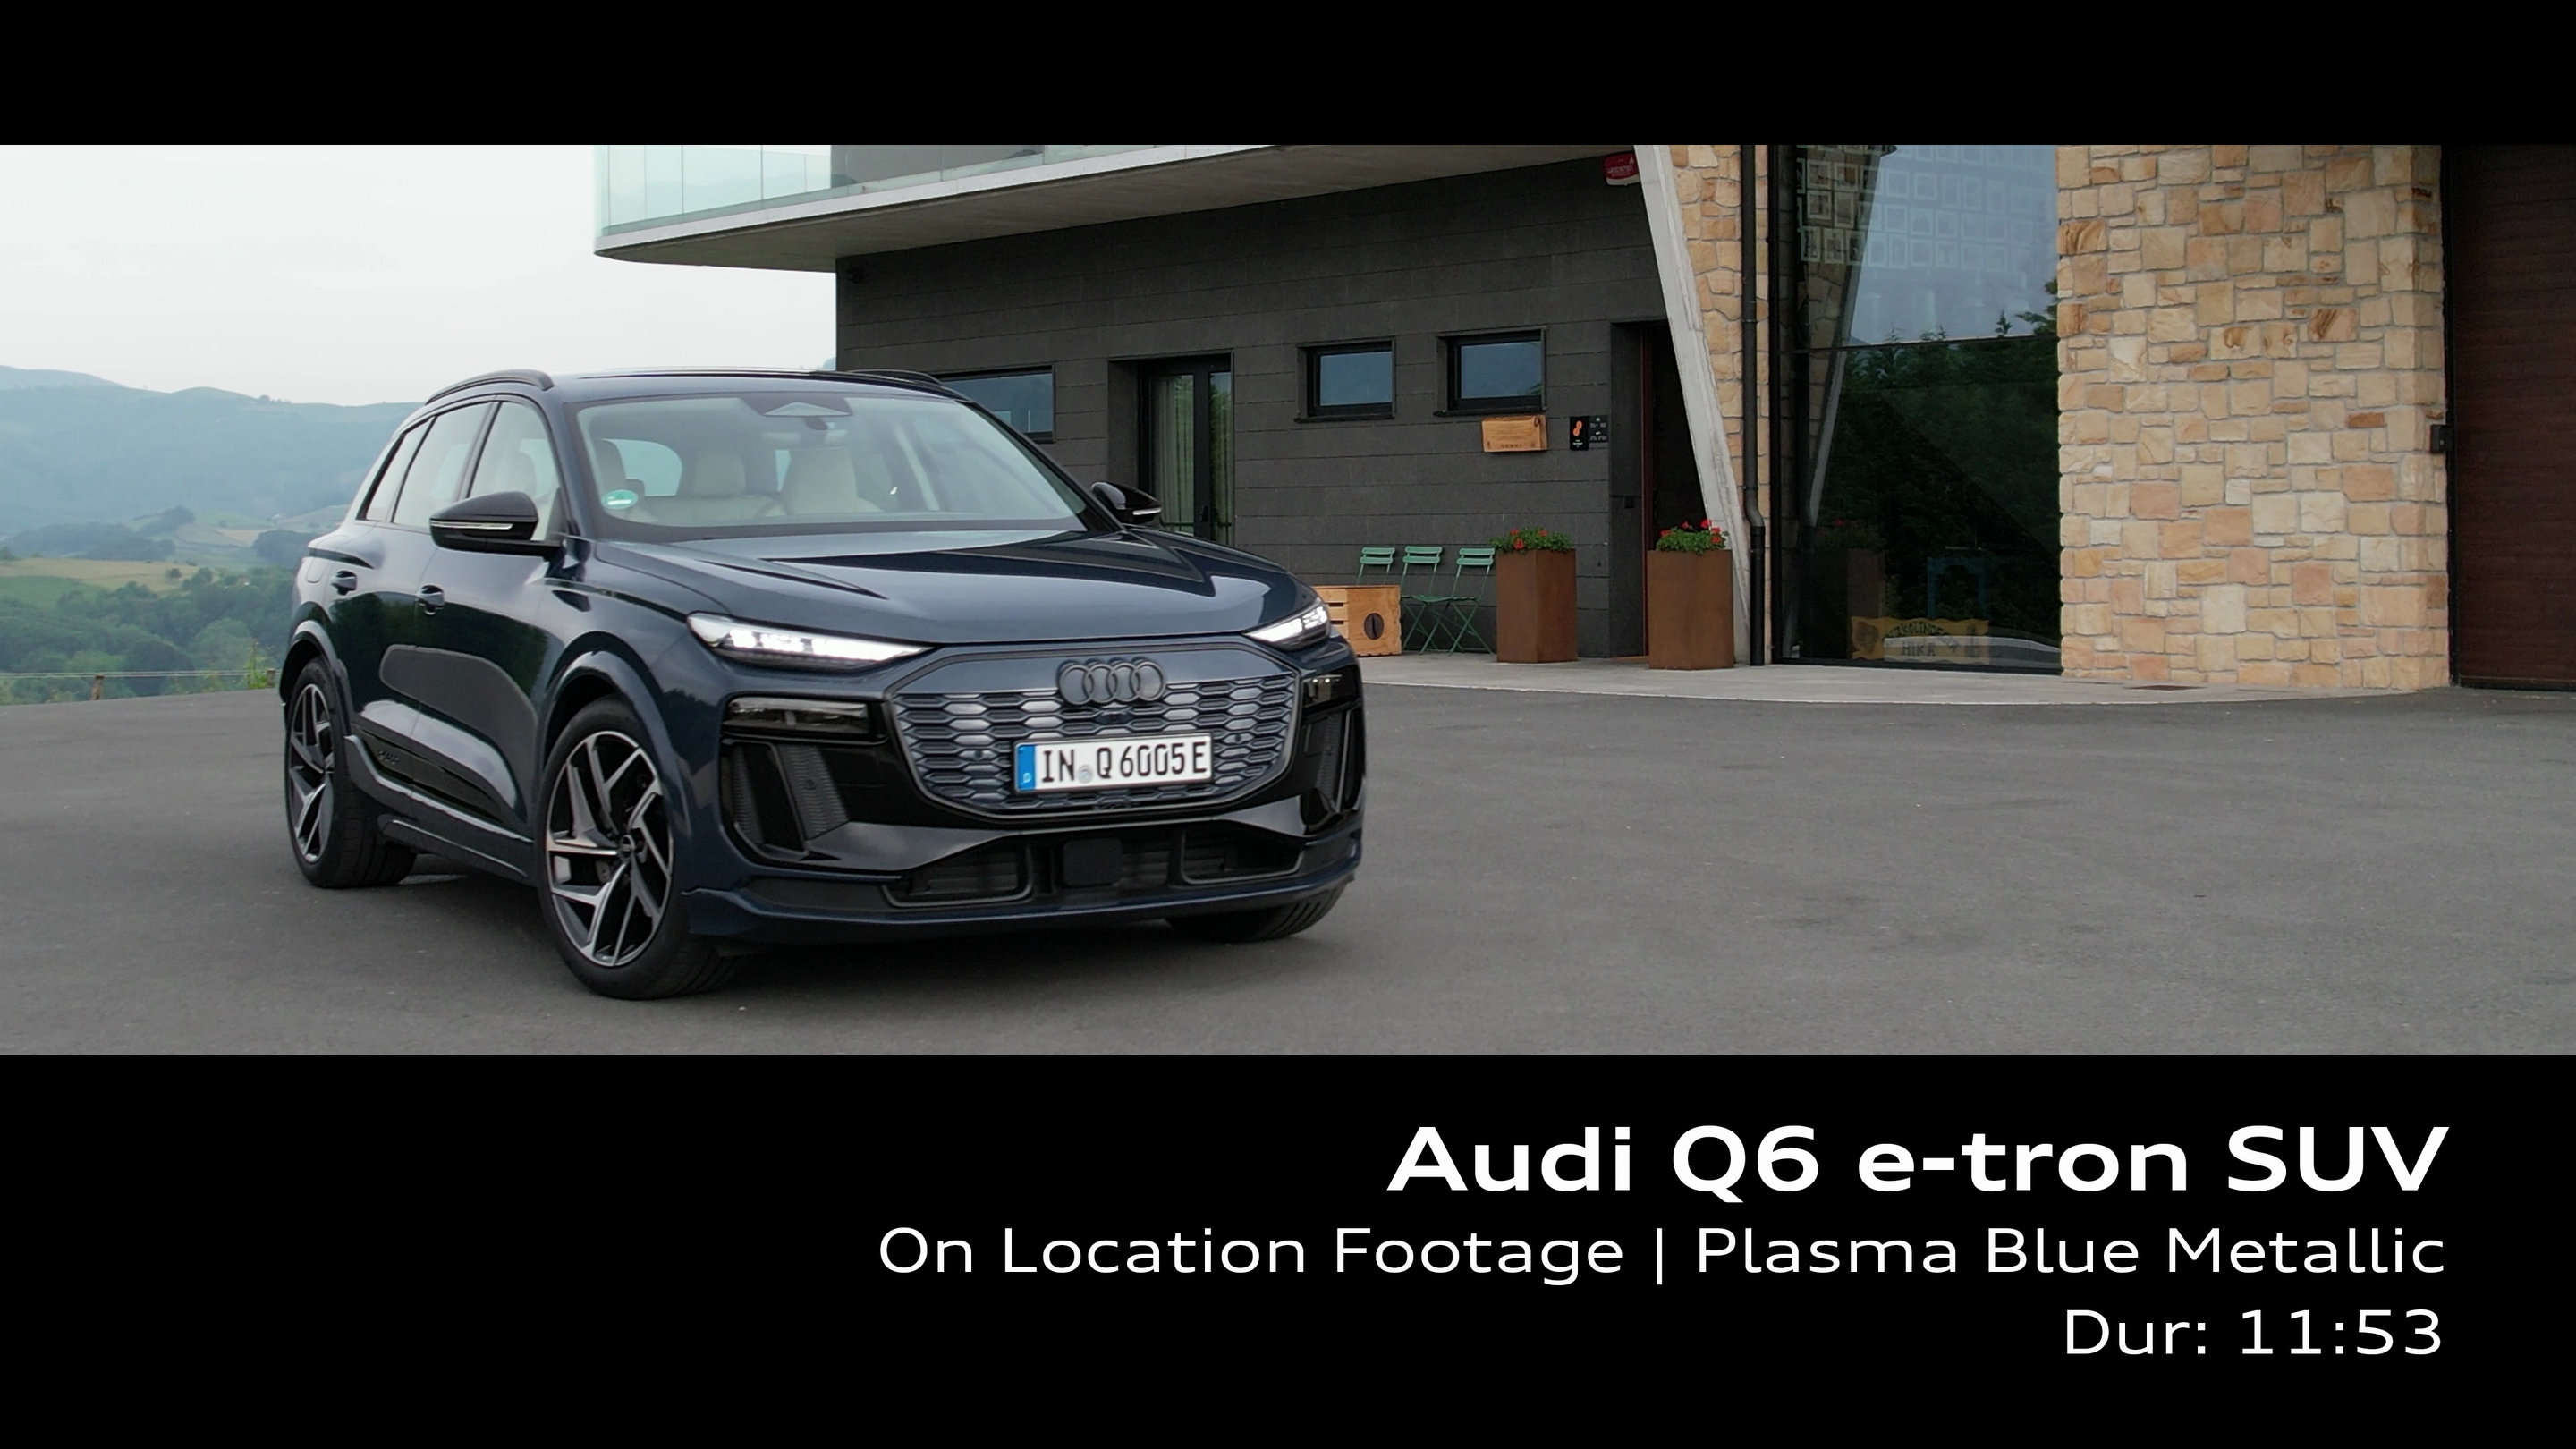 Audi Q6 e-tron SUV Plasmablau Metallic – Footage (On-Location)